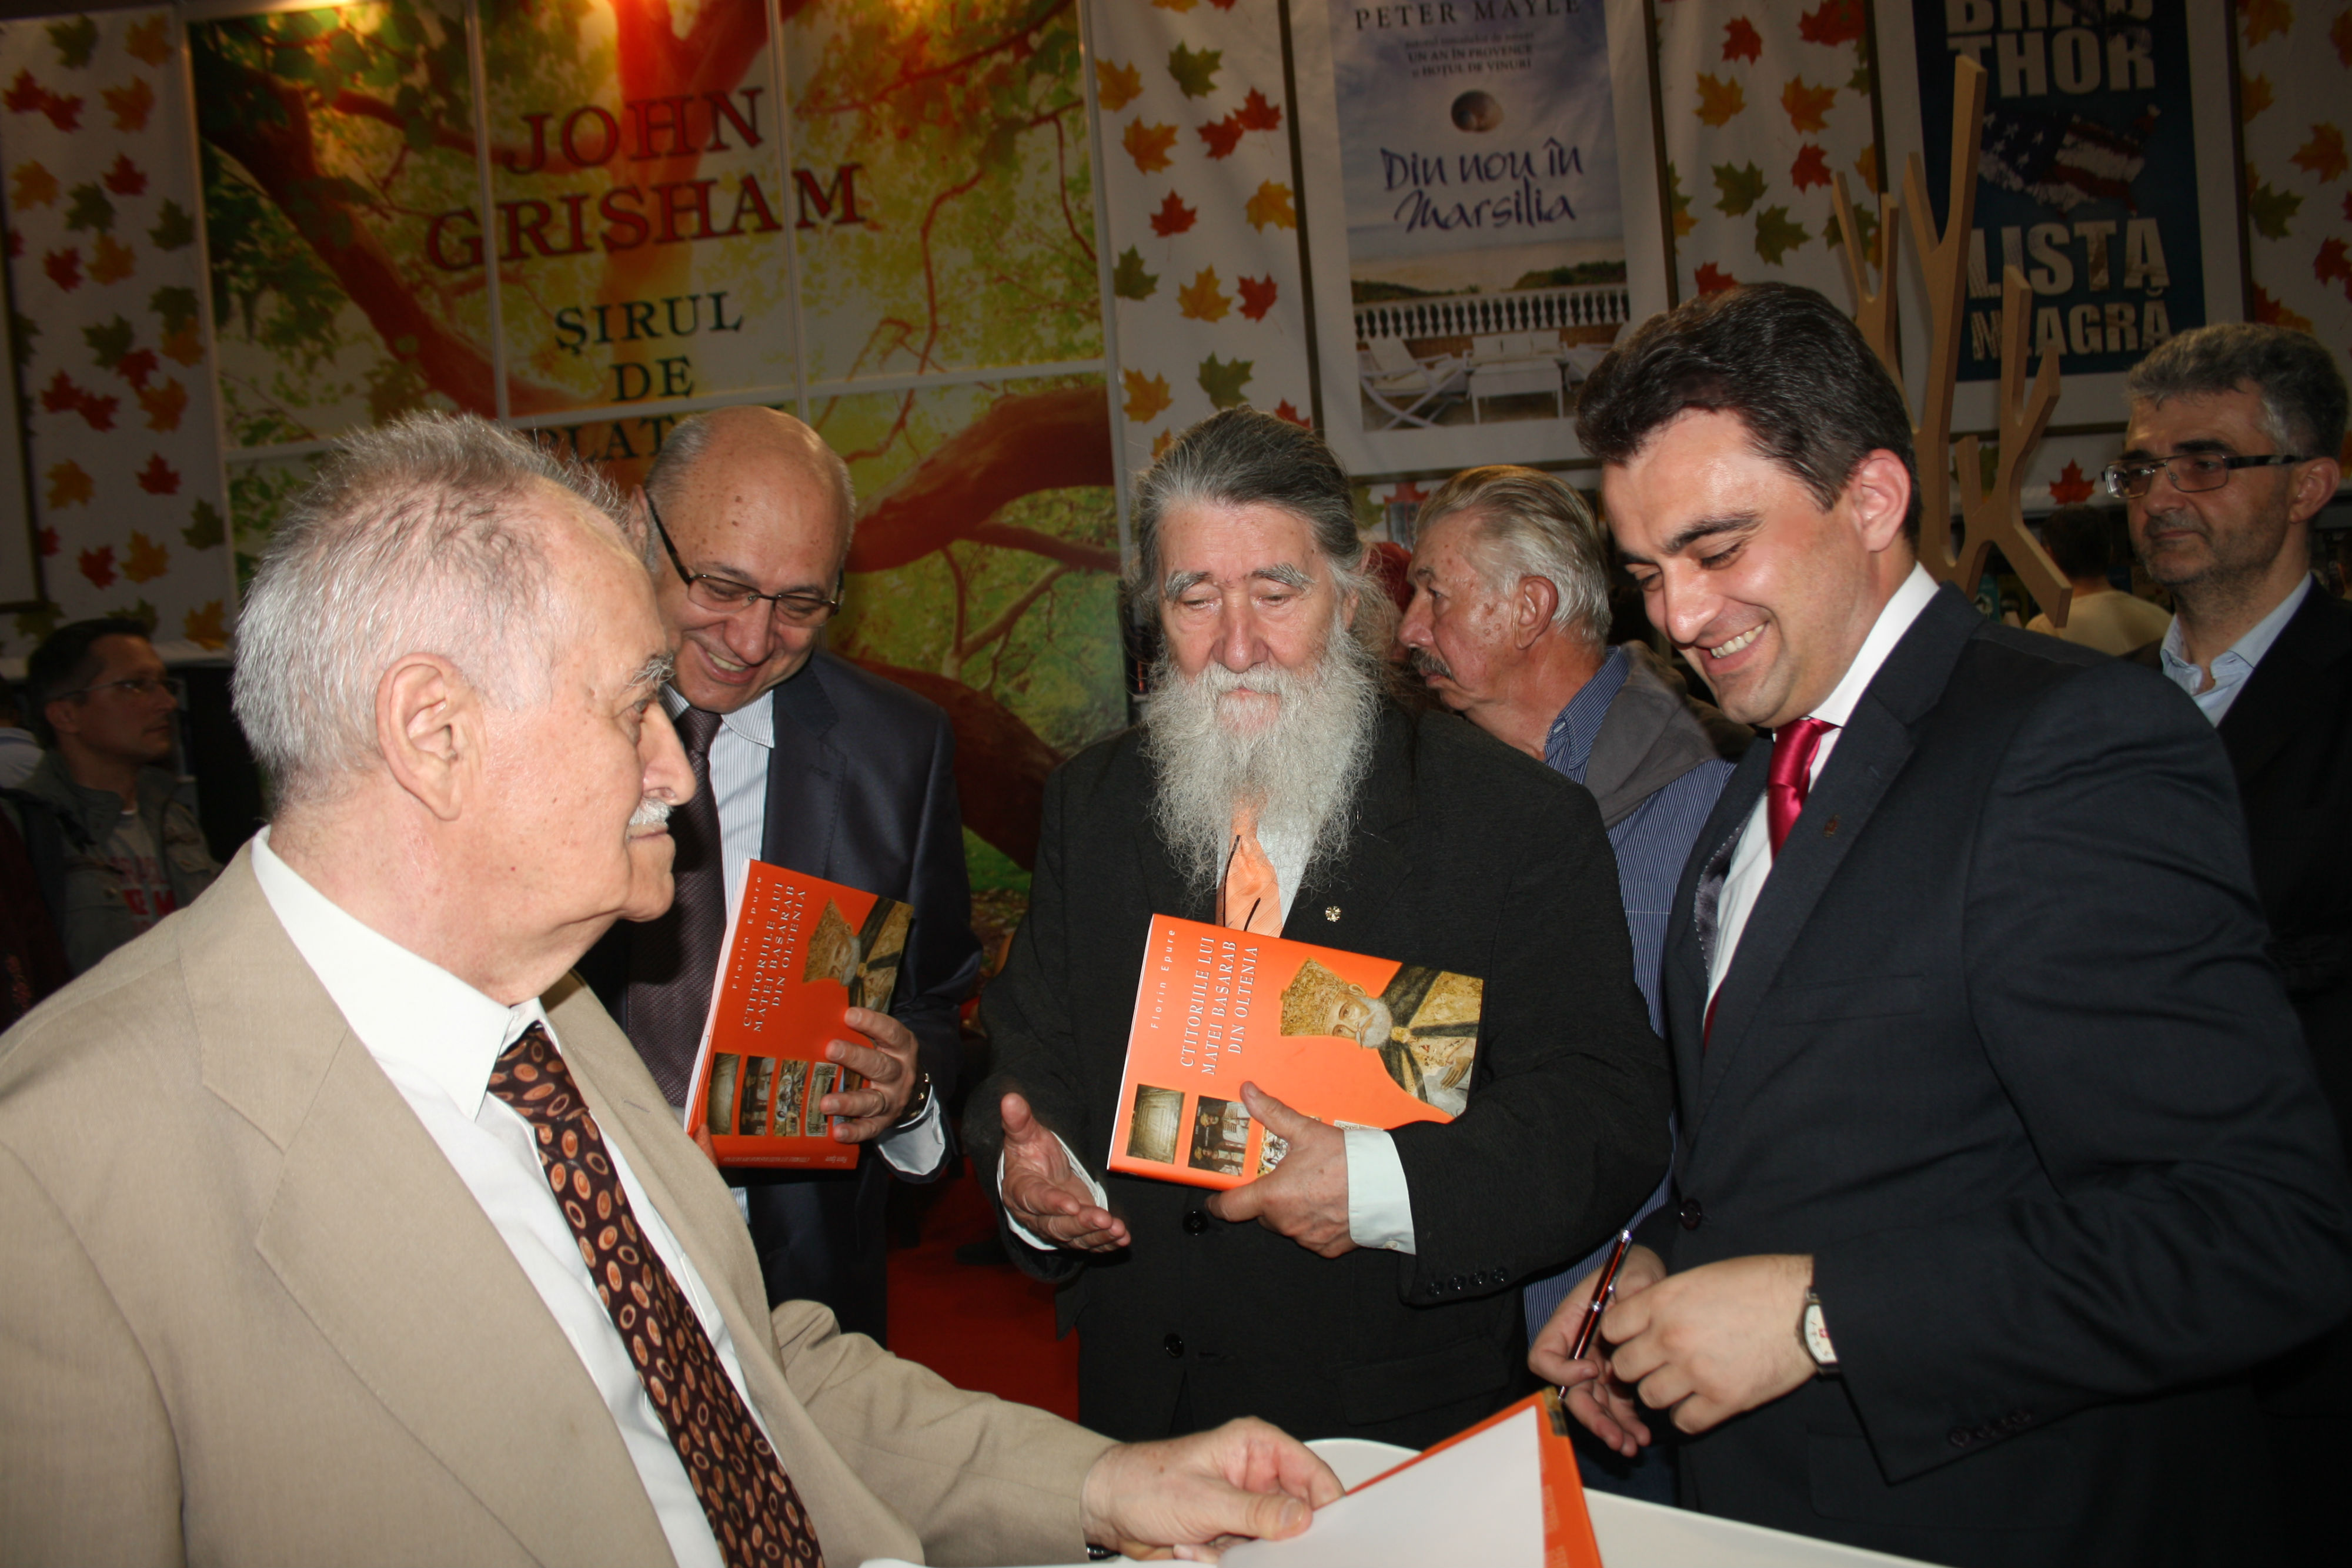 sesiune de autografe Horia-Nestorescu, Radu Stefan  Vergatti, dr. Irinel Popescu